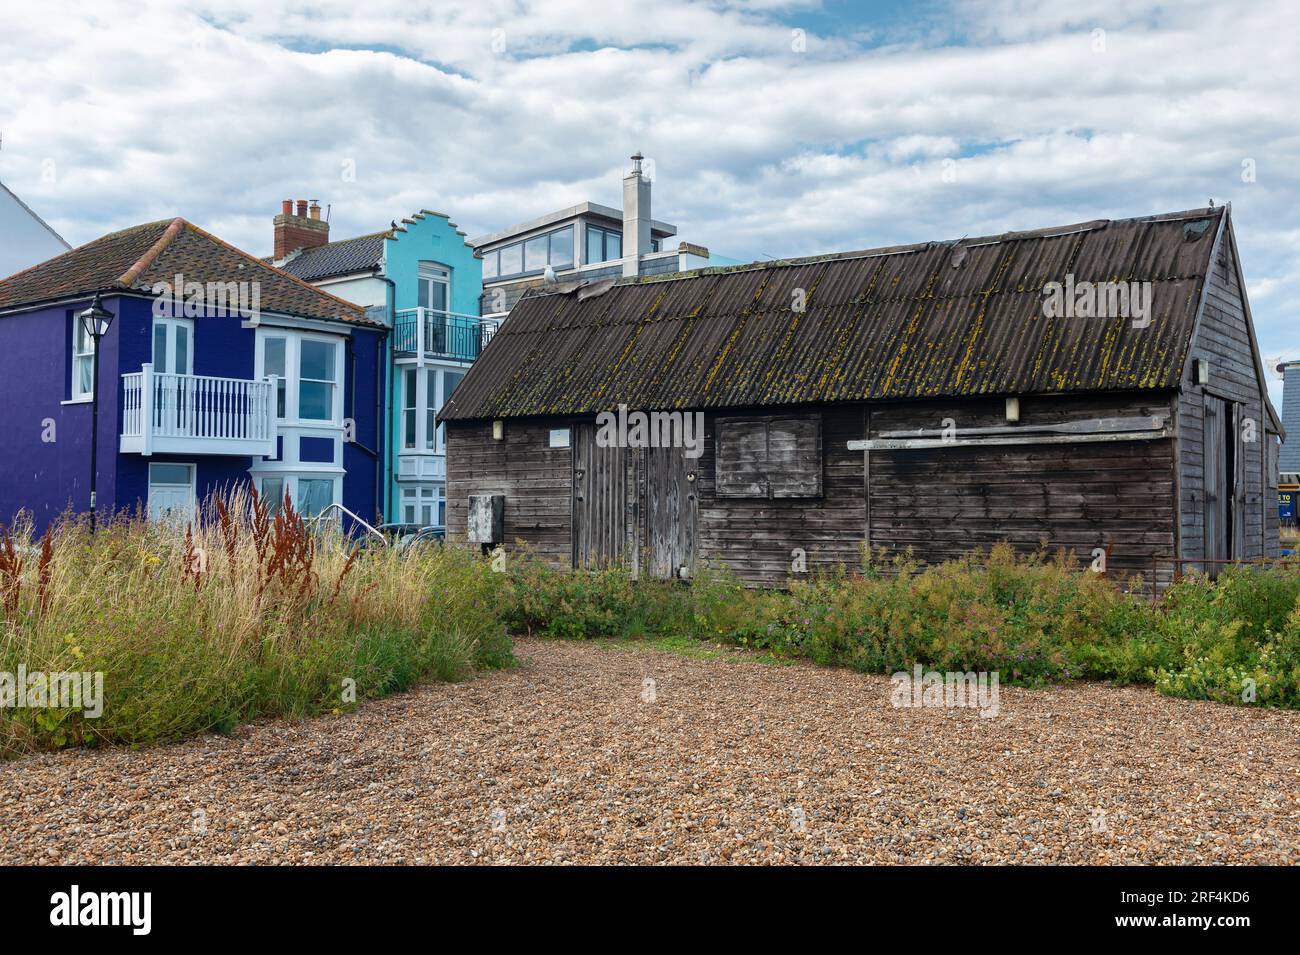 Case colorate e capanna di pescatori sulla spiaggia nella località costiera di Aldeburgh, Suffolk, Inghilterra, Regno Unito Foto Stock